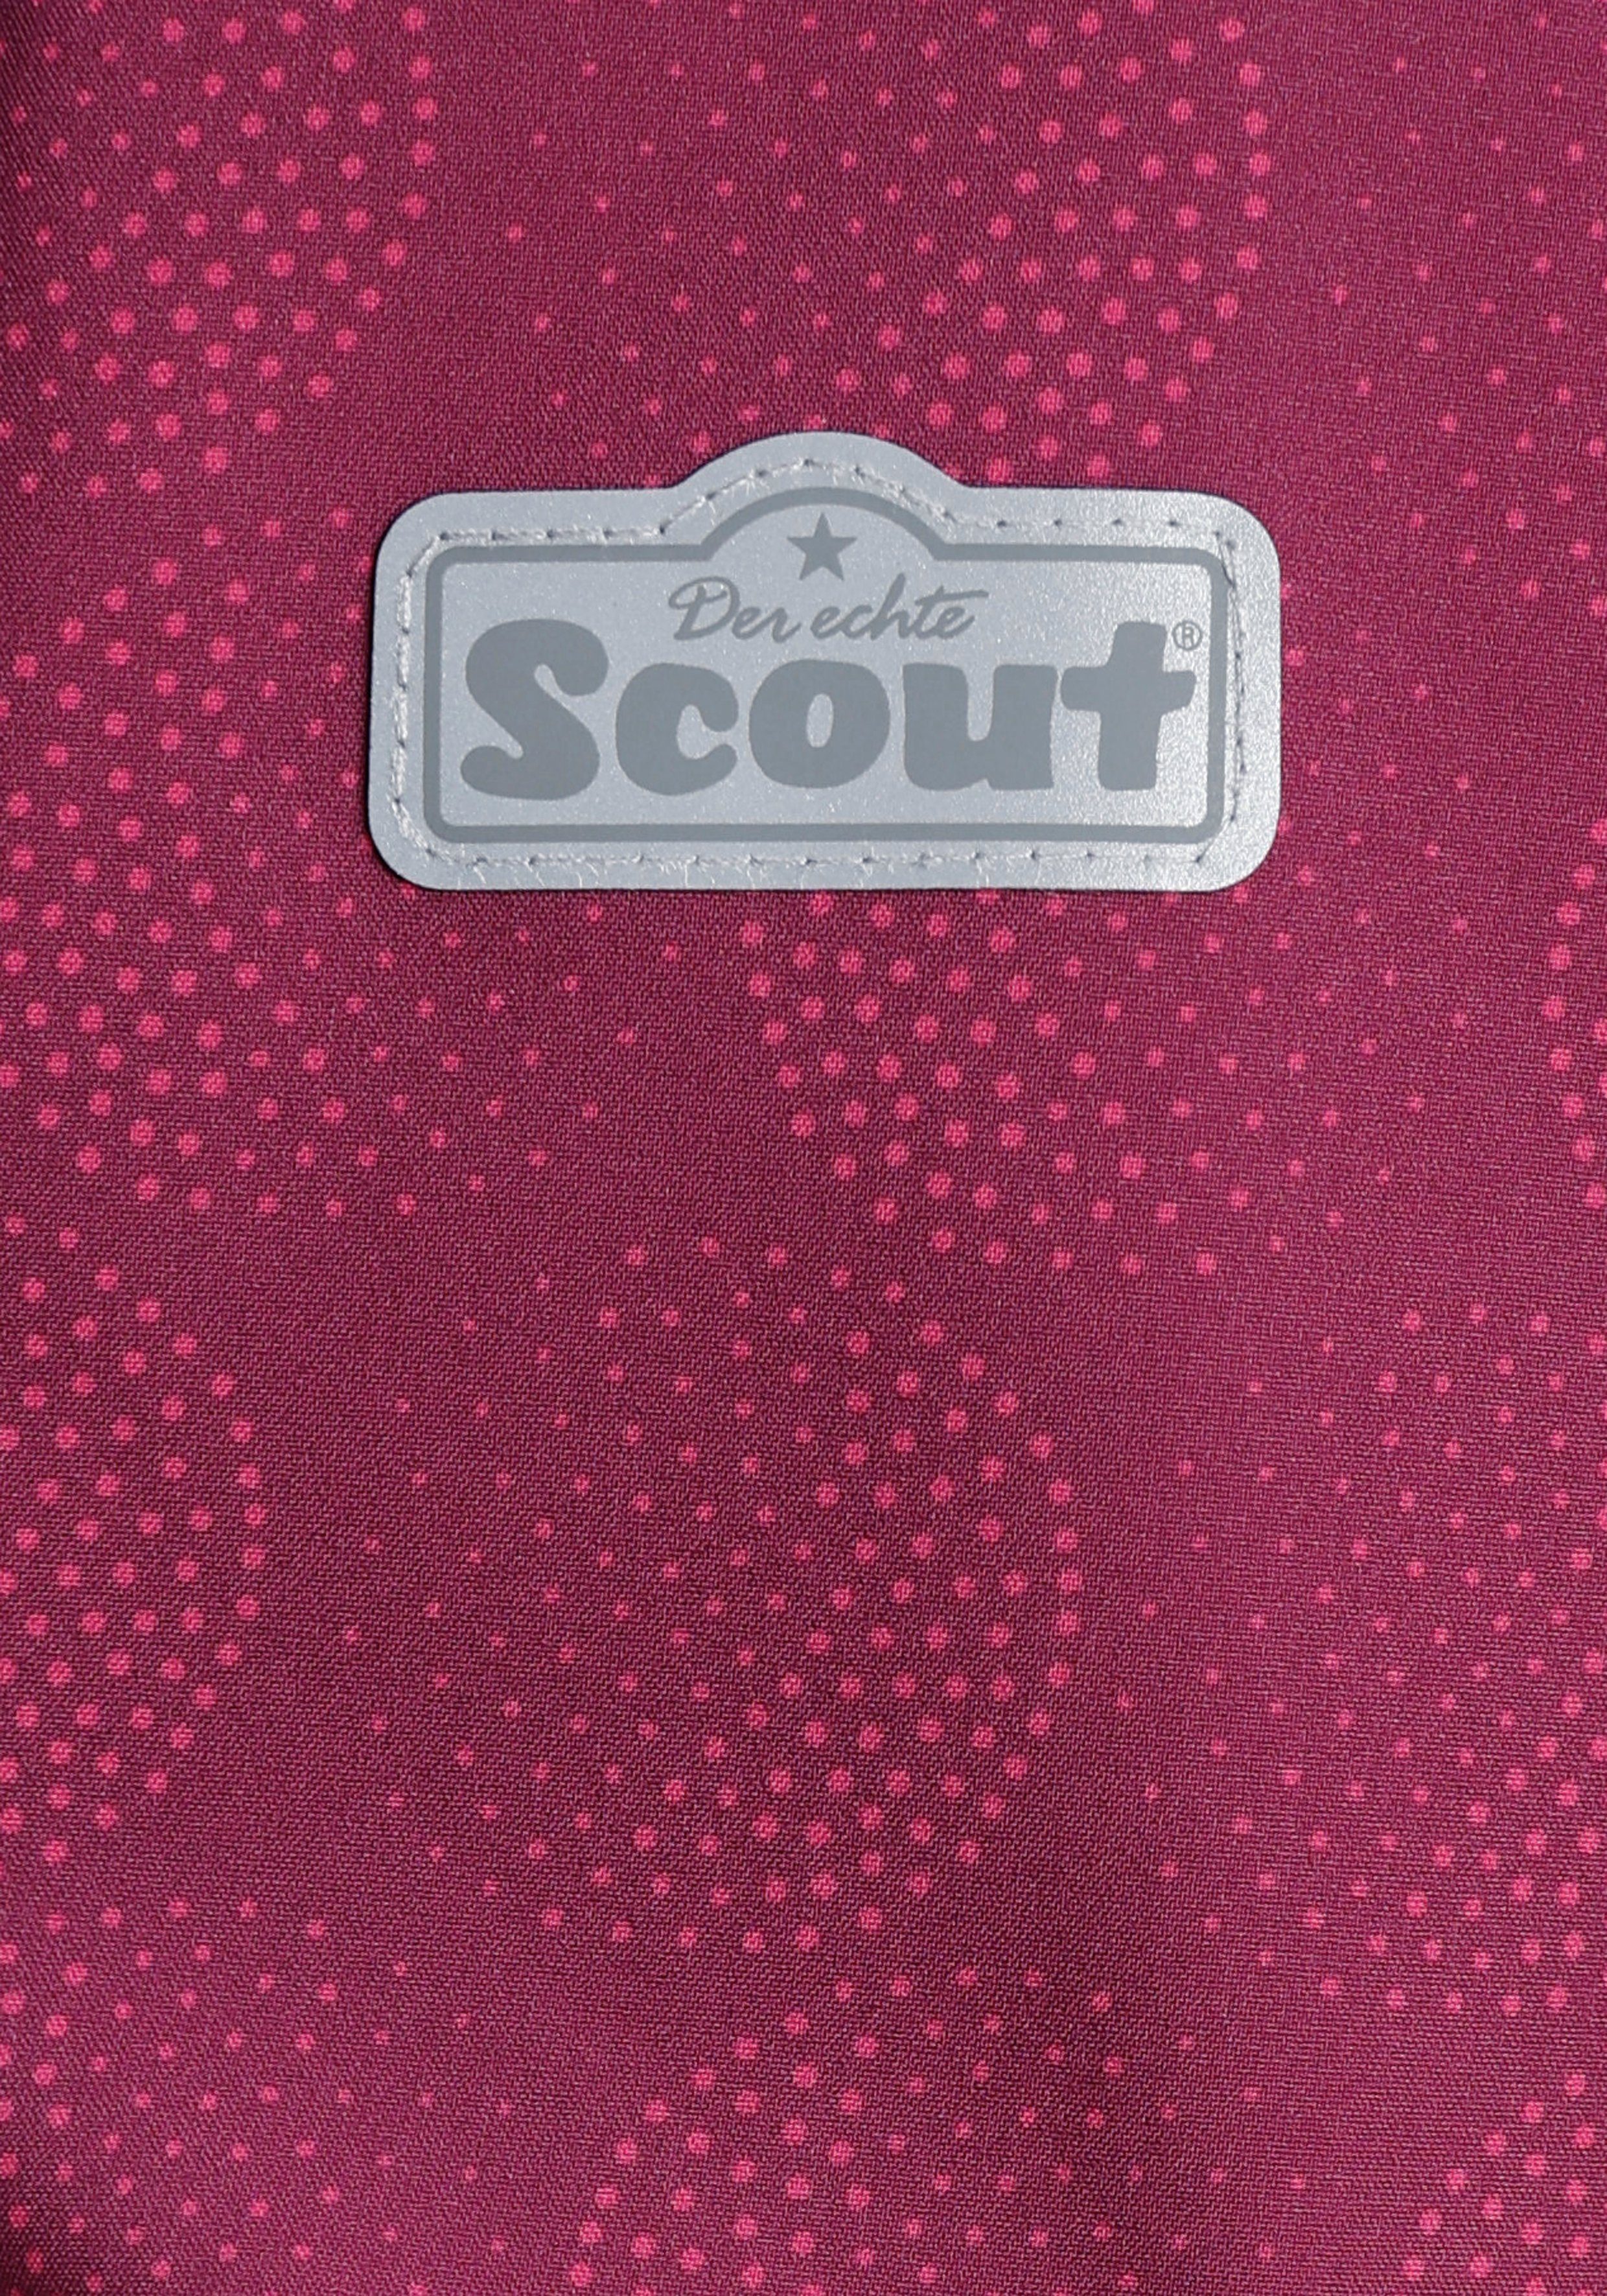 SHIMMER Scout mit Details reflektierenden Softshelljacke